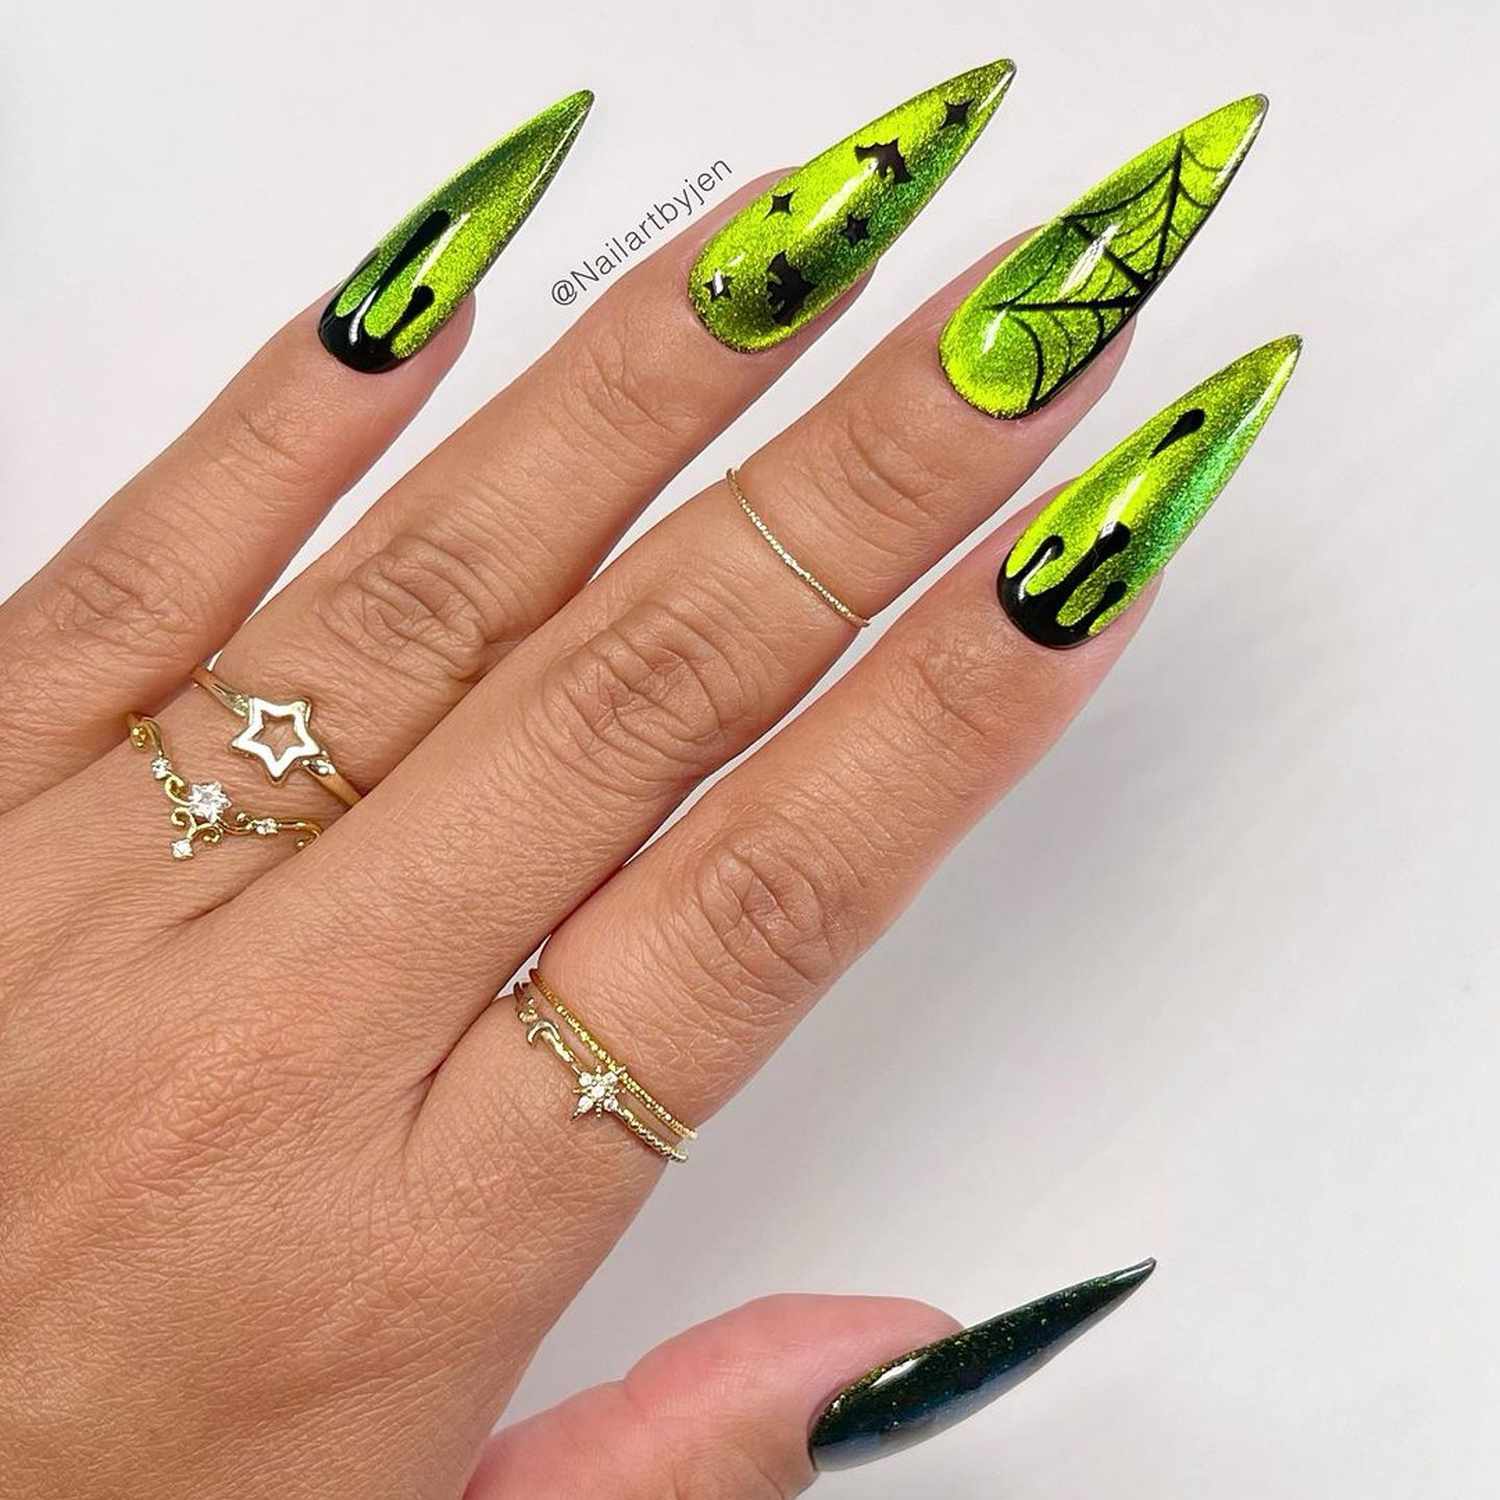 Manicure de veludo verde com detalhes em preto e detalhes